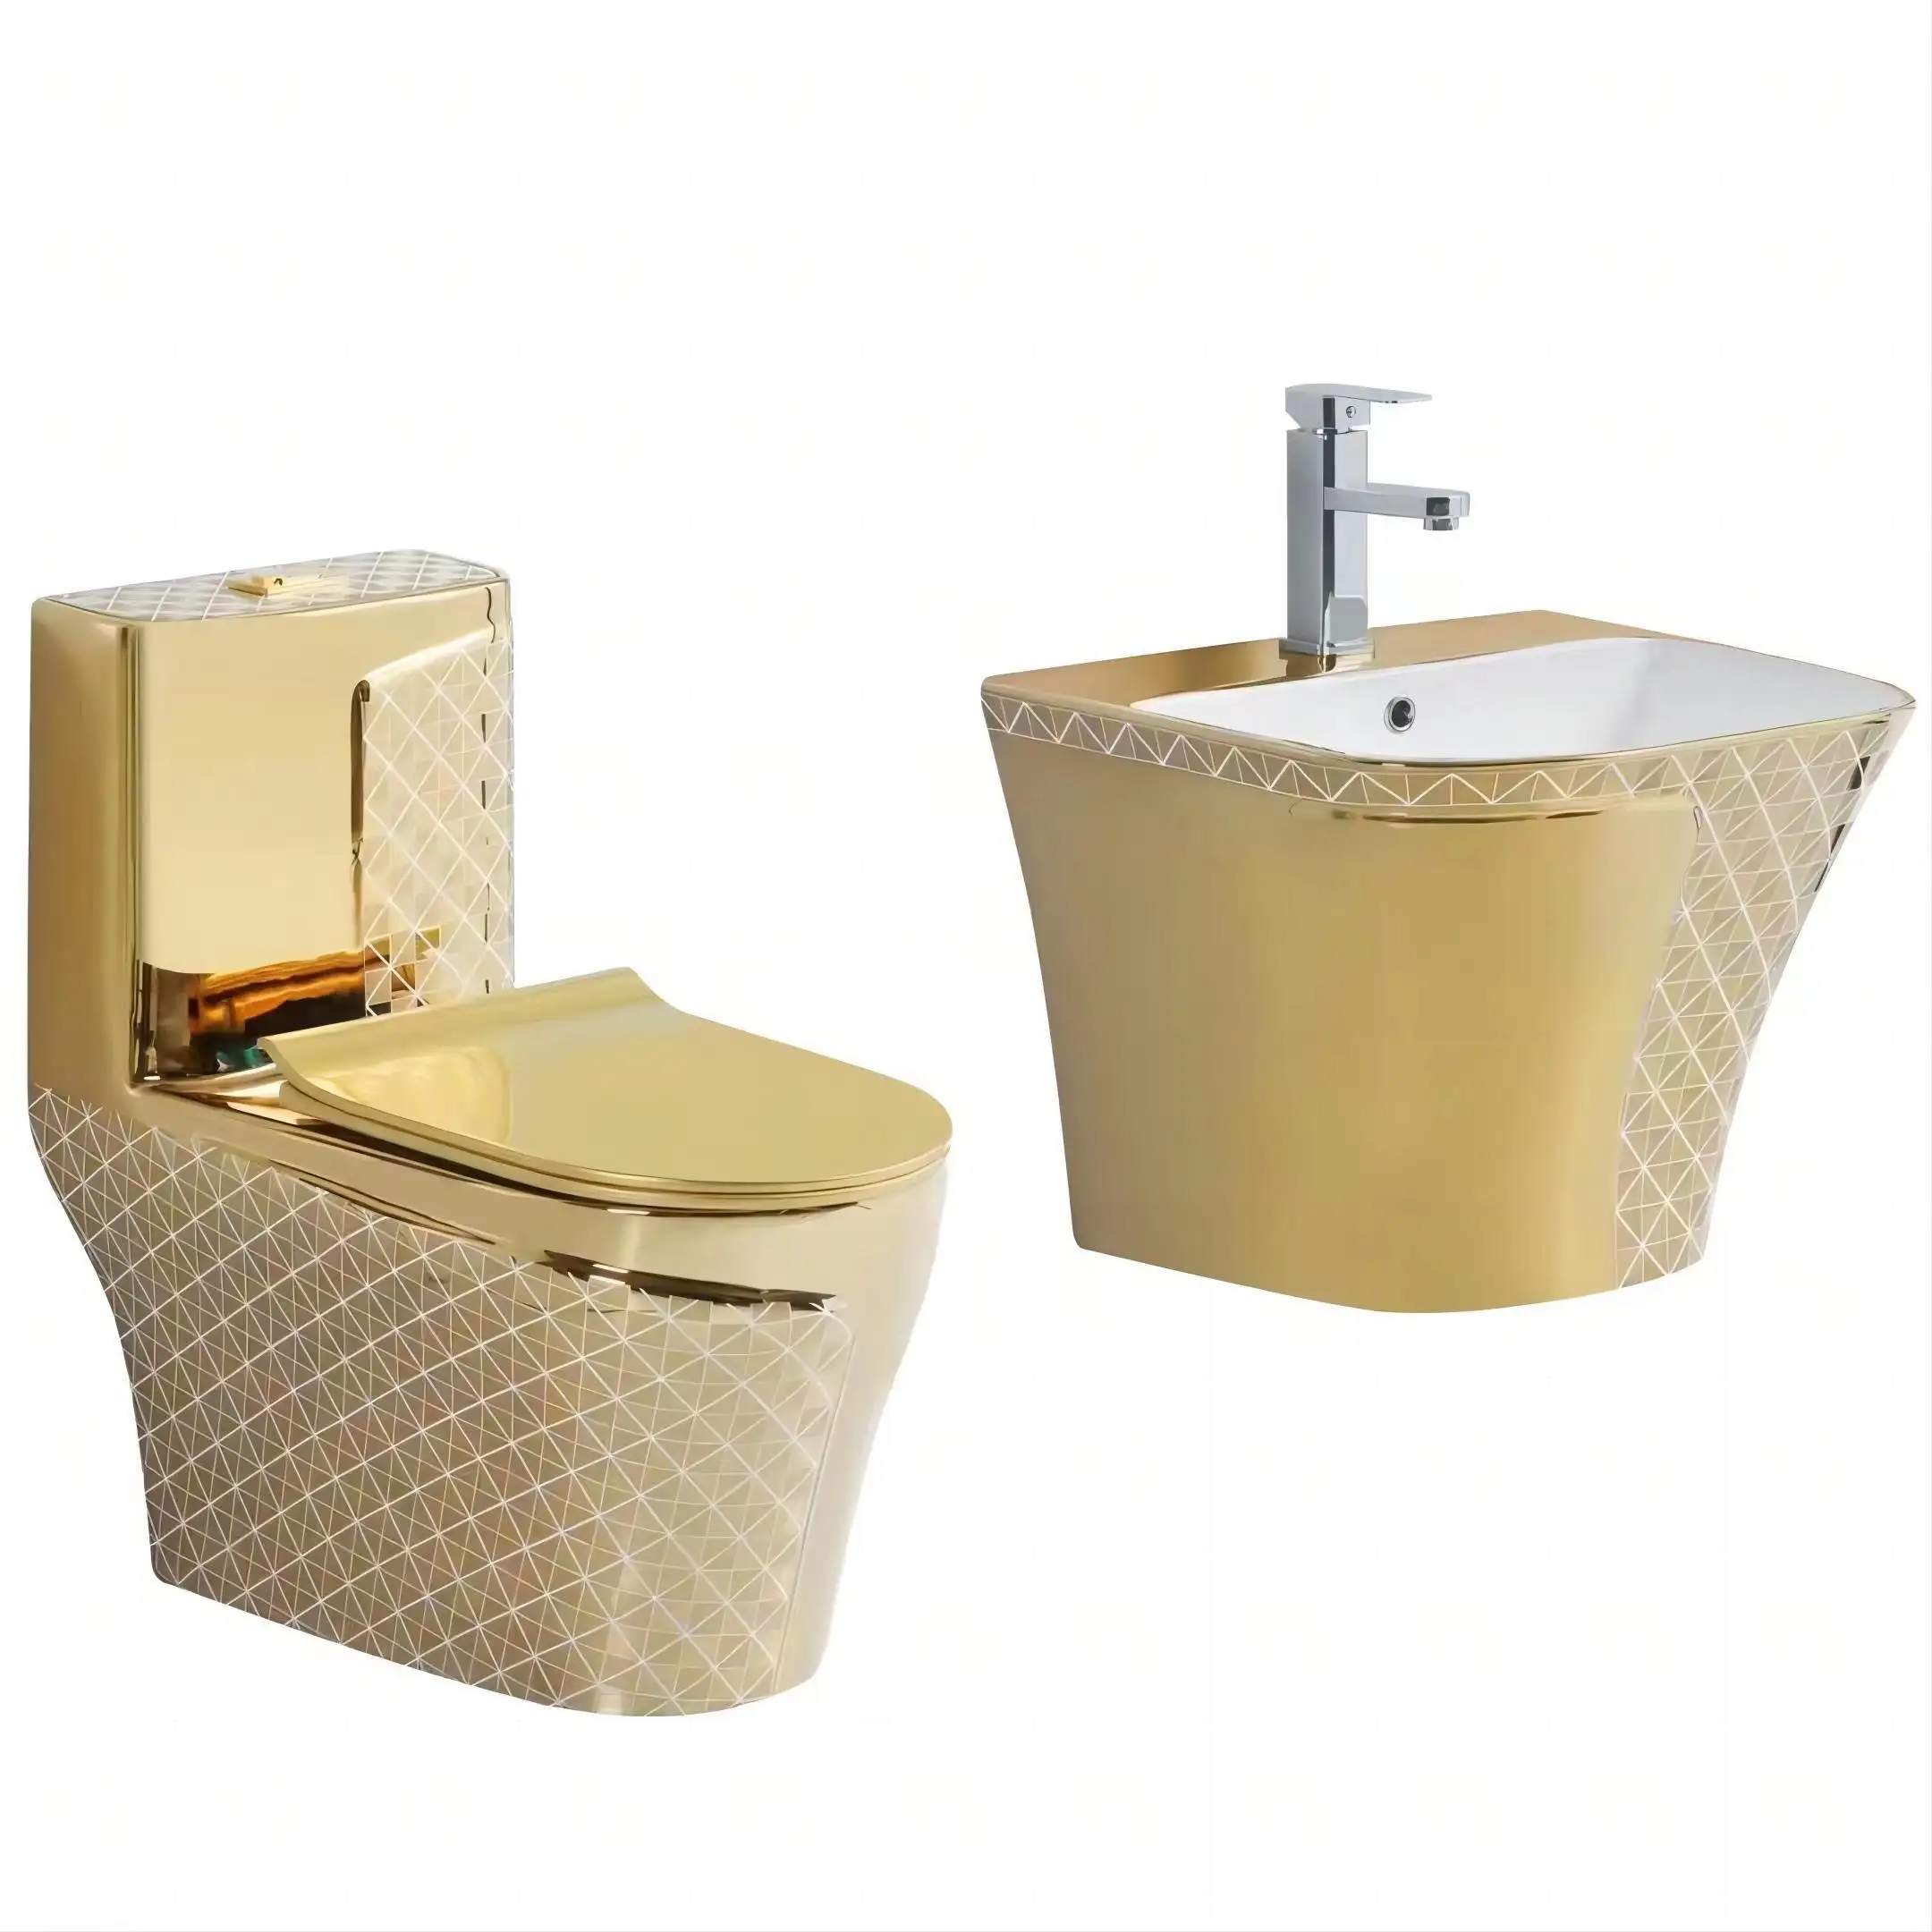 लक्जरी शैली सेनेटरी वेयर फैशन आधुनिक सोना मढ़वाया खड़े हो जाओ सिंक डब्ल्यूसी कटोरा कुरसी बेसिन के साथ बाथरूम चीनी मिट्टी सोना शौचालय सेट